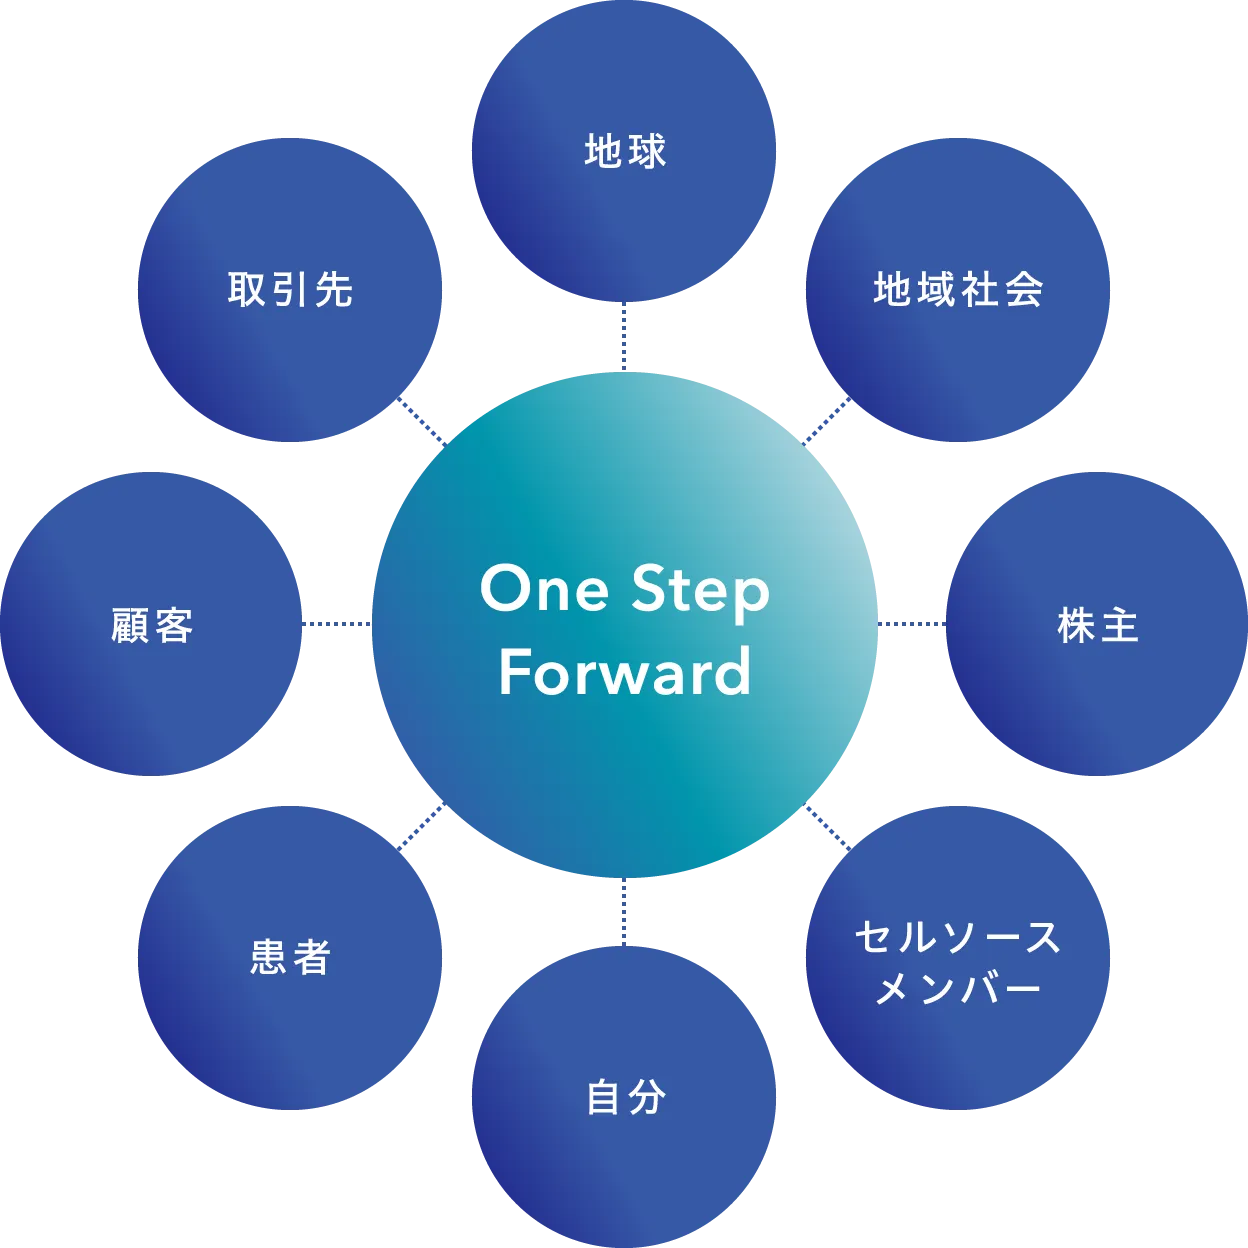 セルソースのスピリット、One Step Forwardを表す概念図